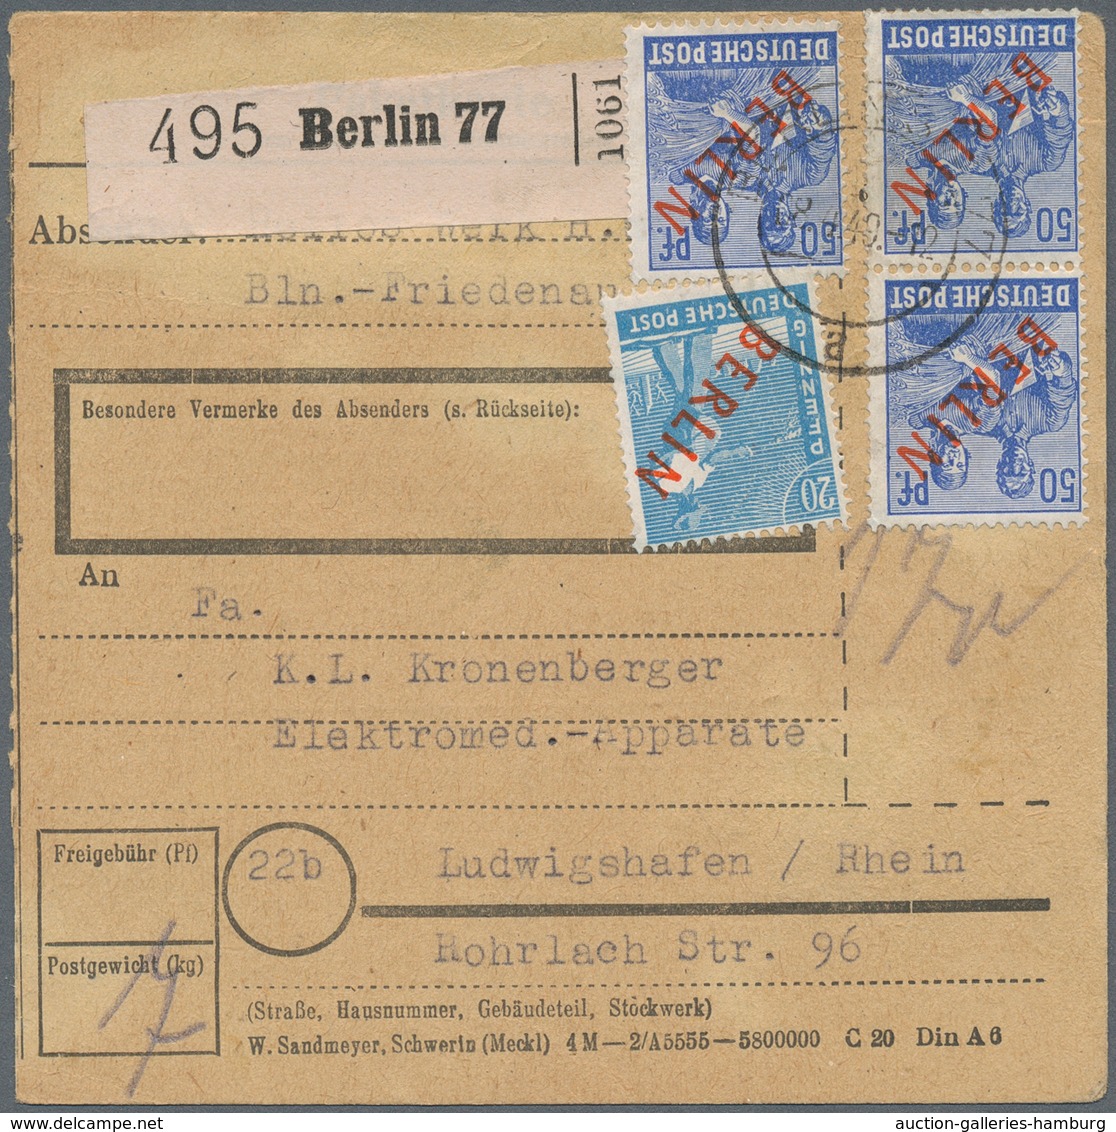 Berlin: 20 U. 3 Mal 50 Pf. Rotaufdruck Zusammen Auf Paketkarte Ab Berlin SW 77 Vom 8.4.49 Nach Ludwi - Covers & Documents